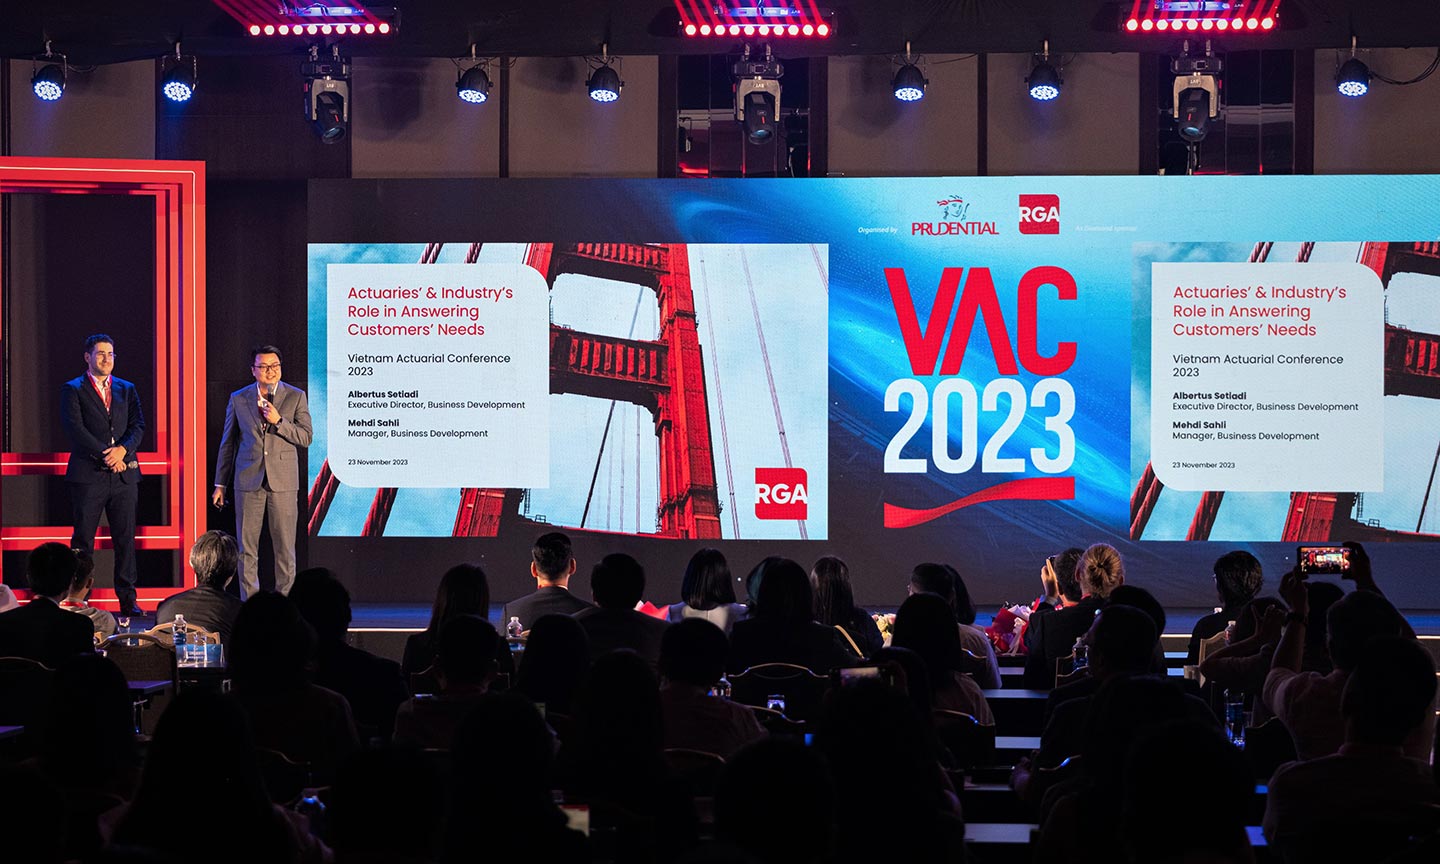 Hơn 350 khách mời tham dự Hội nghị Định phí Bảo hiểm Việt Nam 2023 với chủ đề “Kỷ nguyên mới của ngành bảo hiểm”.